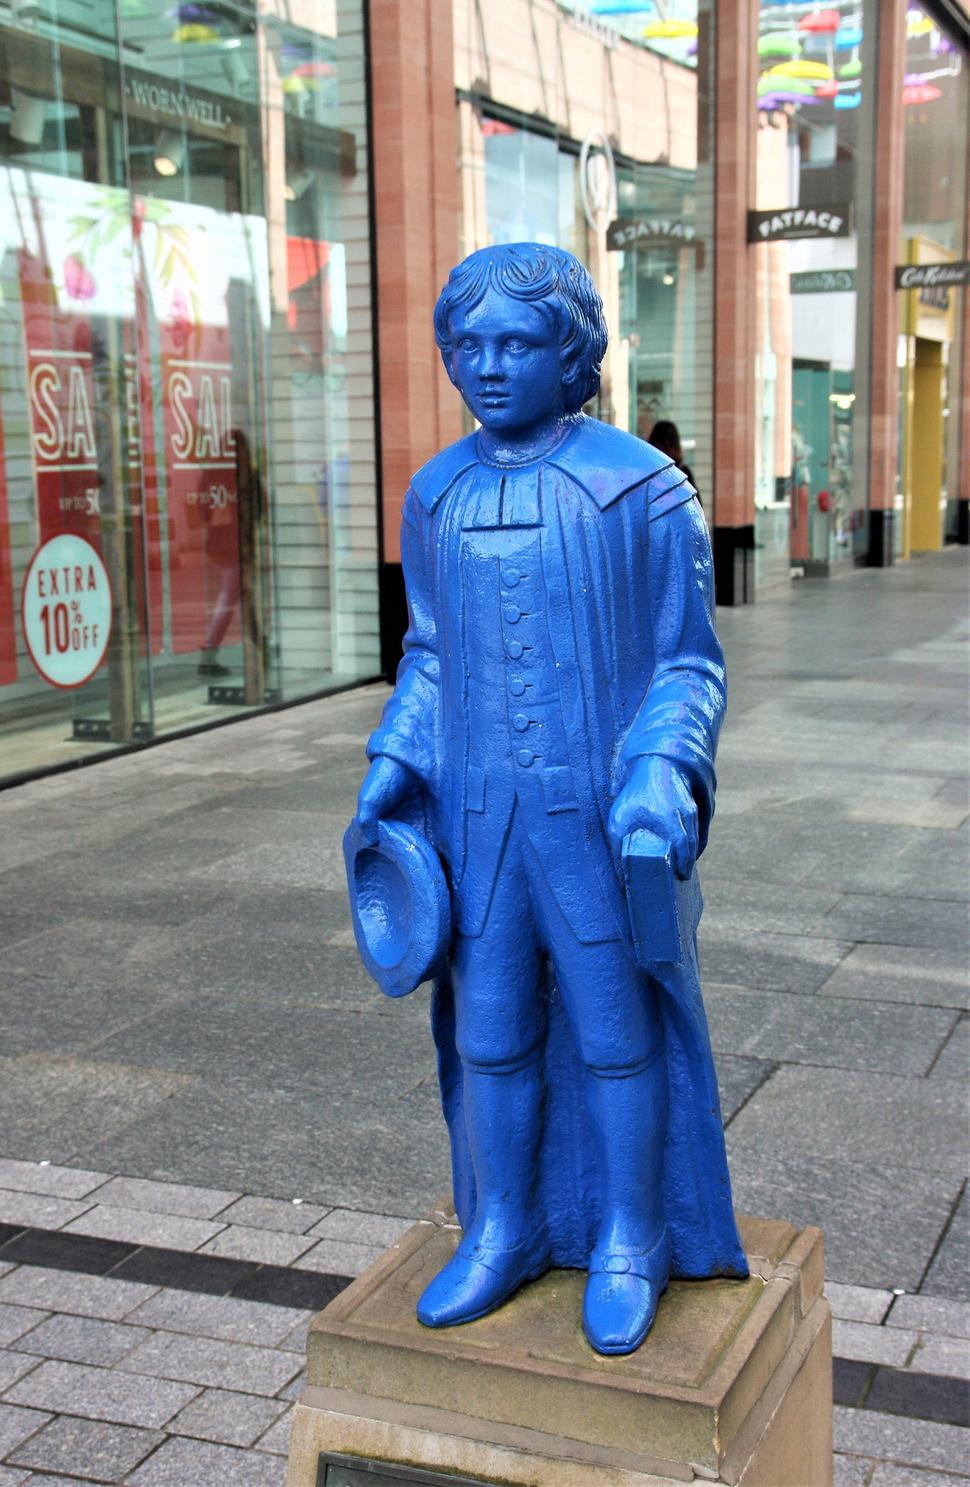 cette statue du garçon bleu est mentionnée dans l'école de St. jana, qui se tenait autrefois à cet endroit, les écoliers portaient les uniformes bleus prescrits